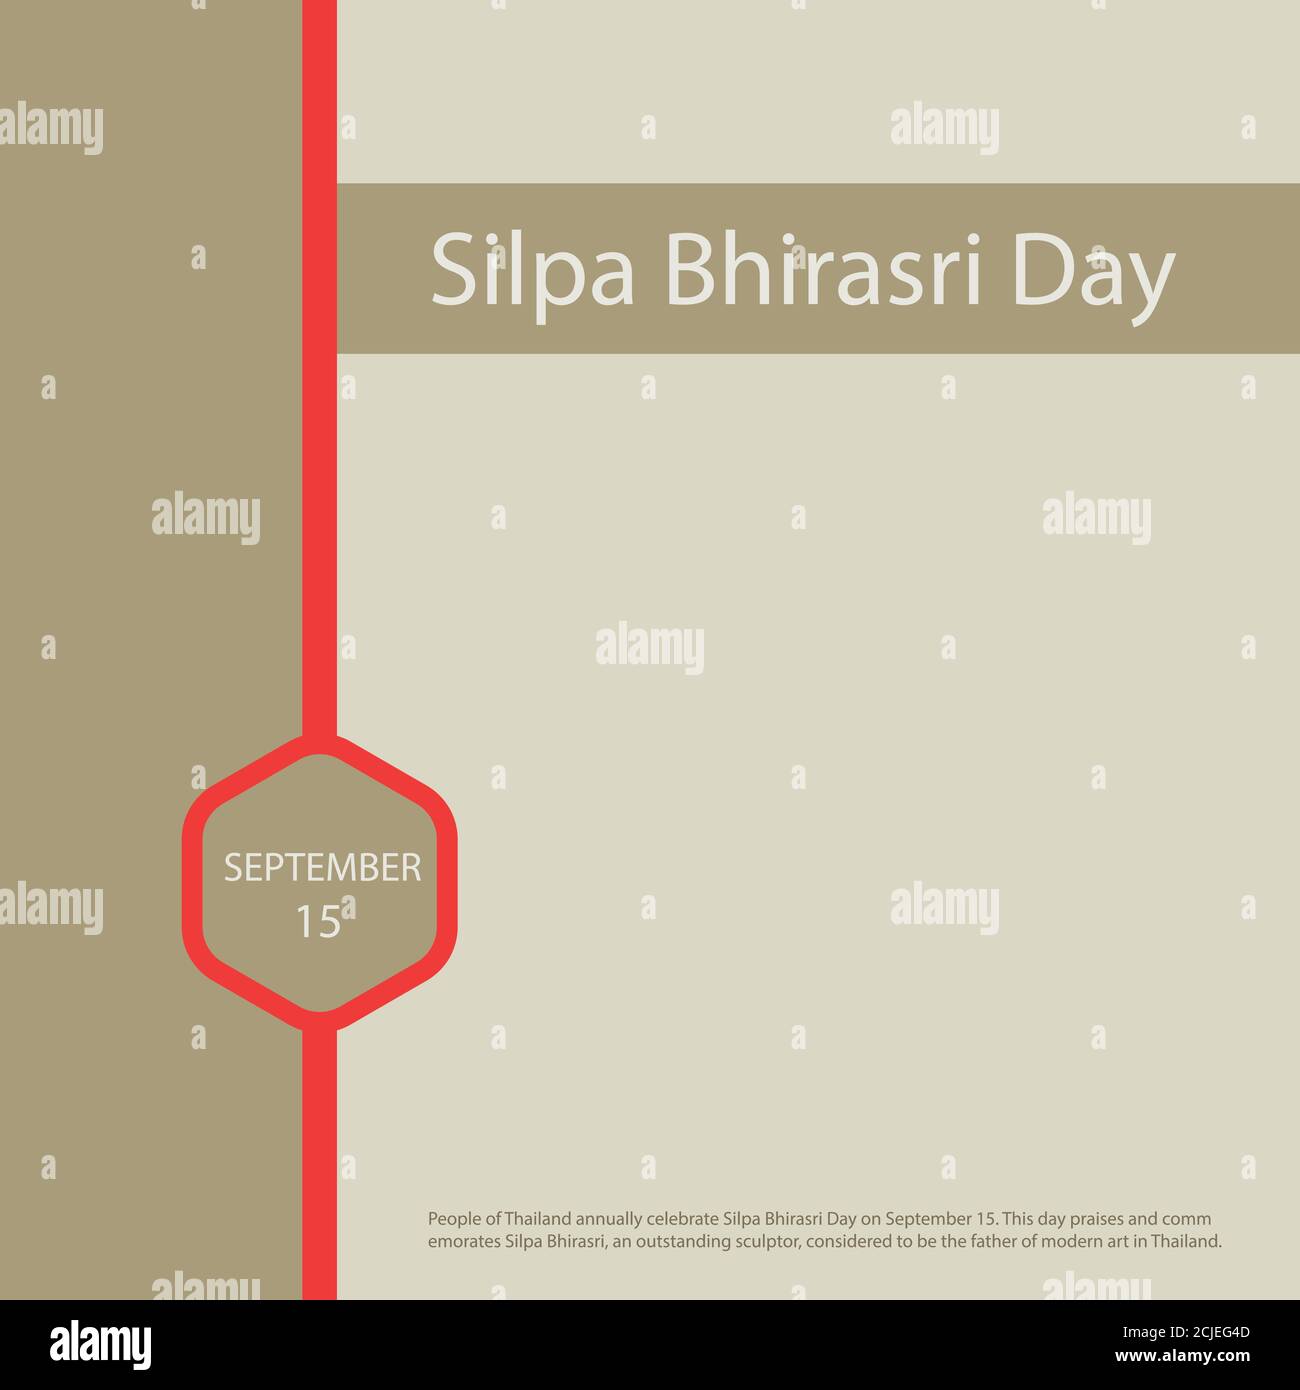 Die Menschen in Thailand feiern jährlich Silpa Bhirasri Tag am 15. September. Stock Vektor